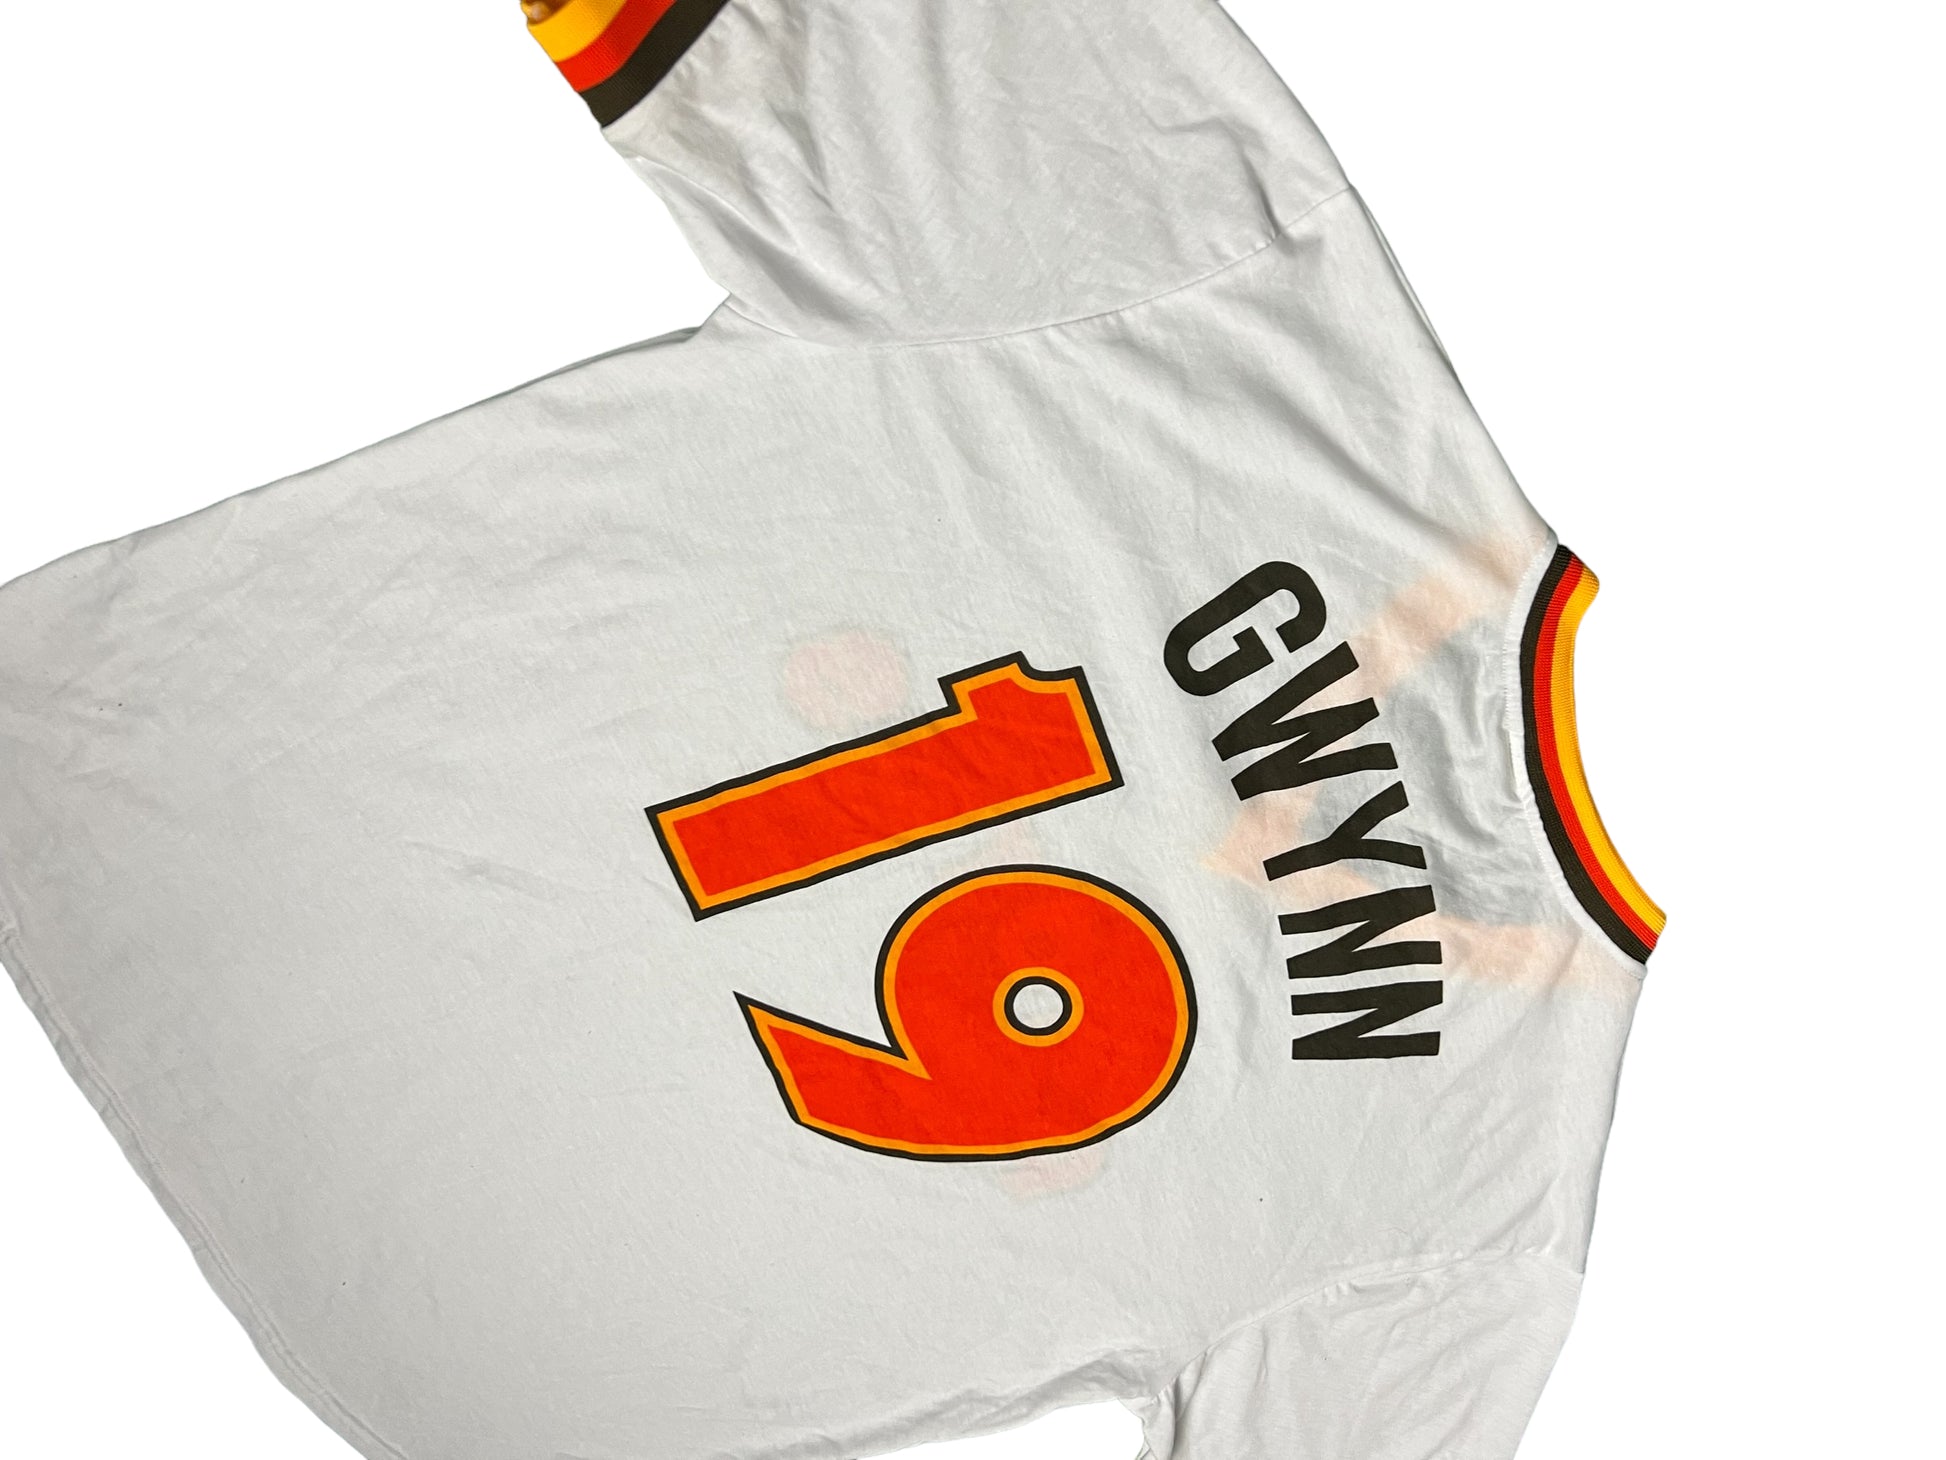 Tony Gwynn MLB Shirts for sale